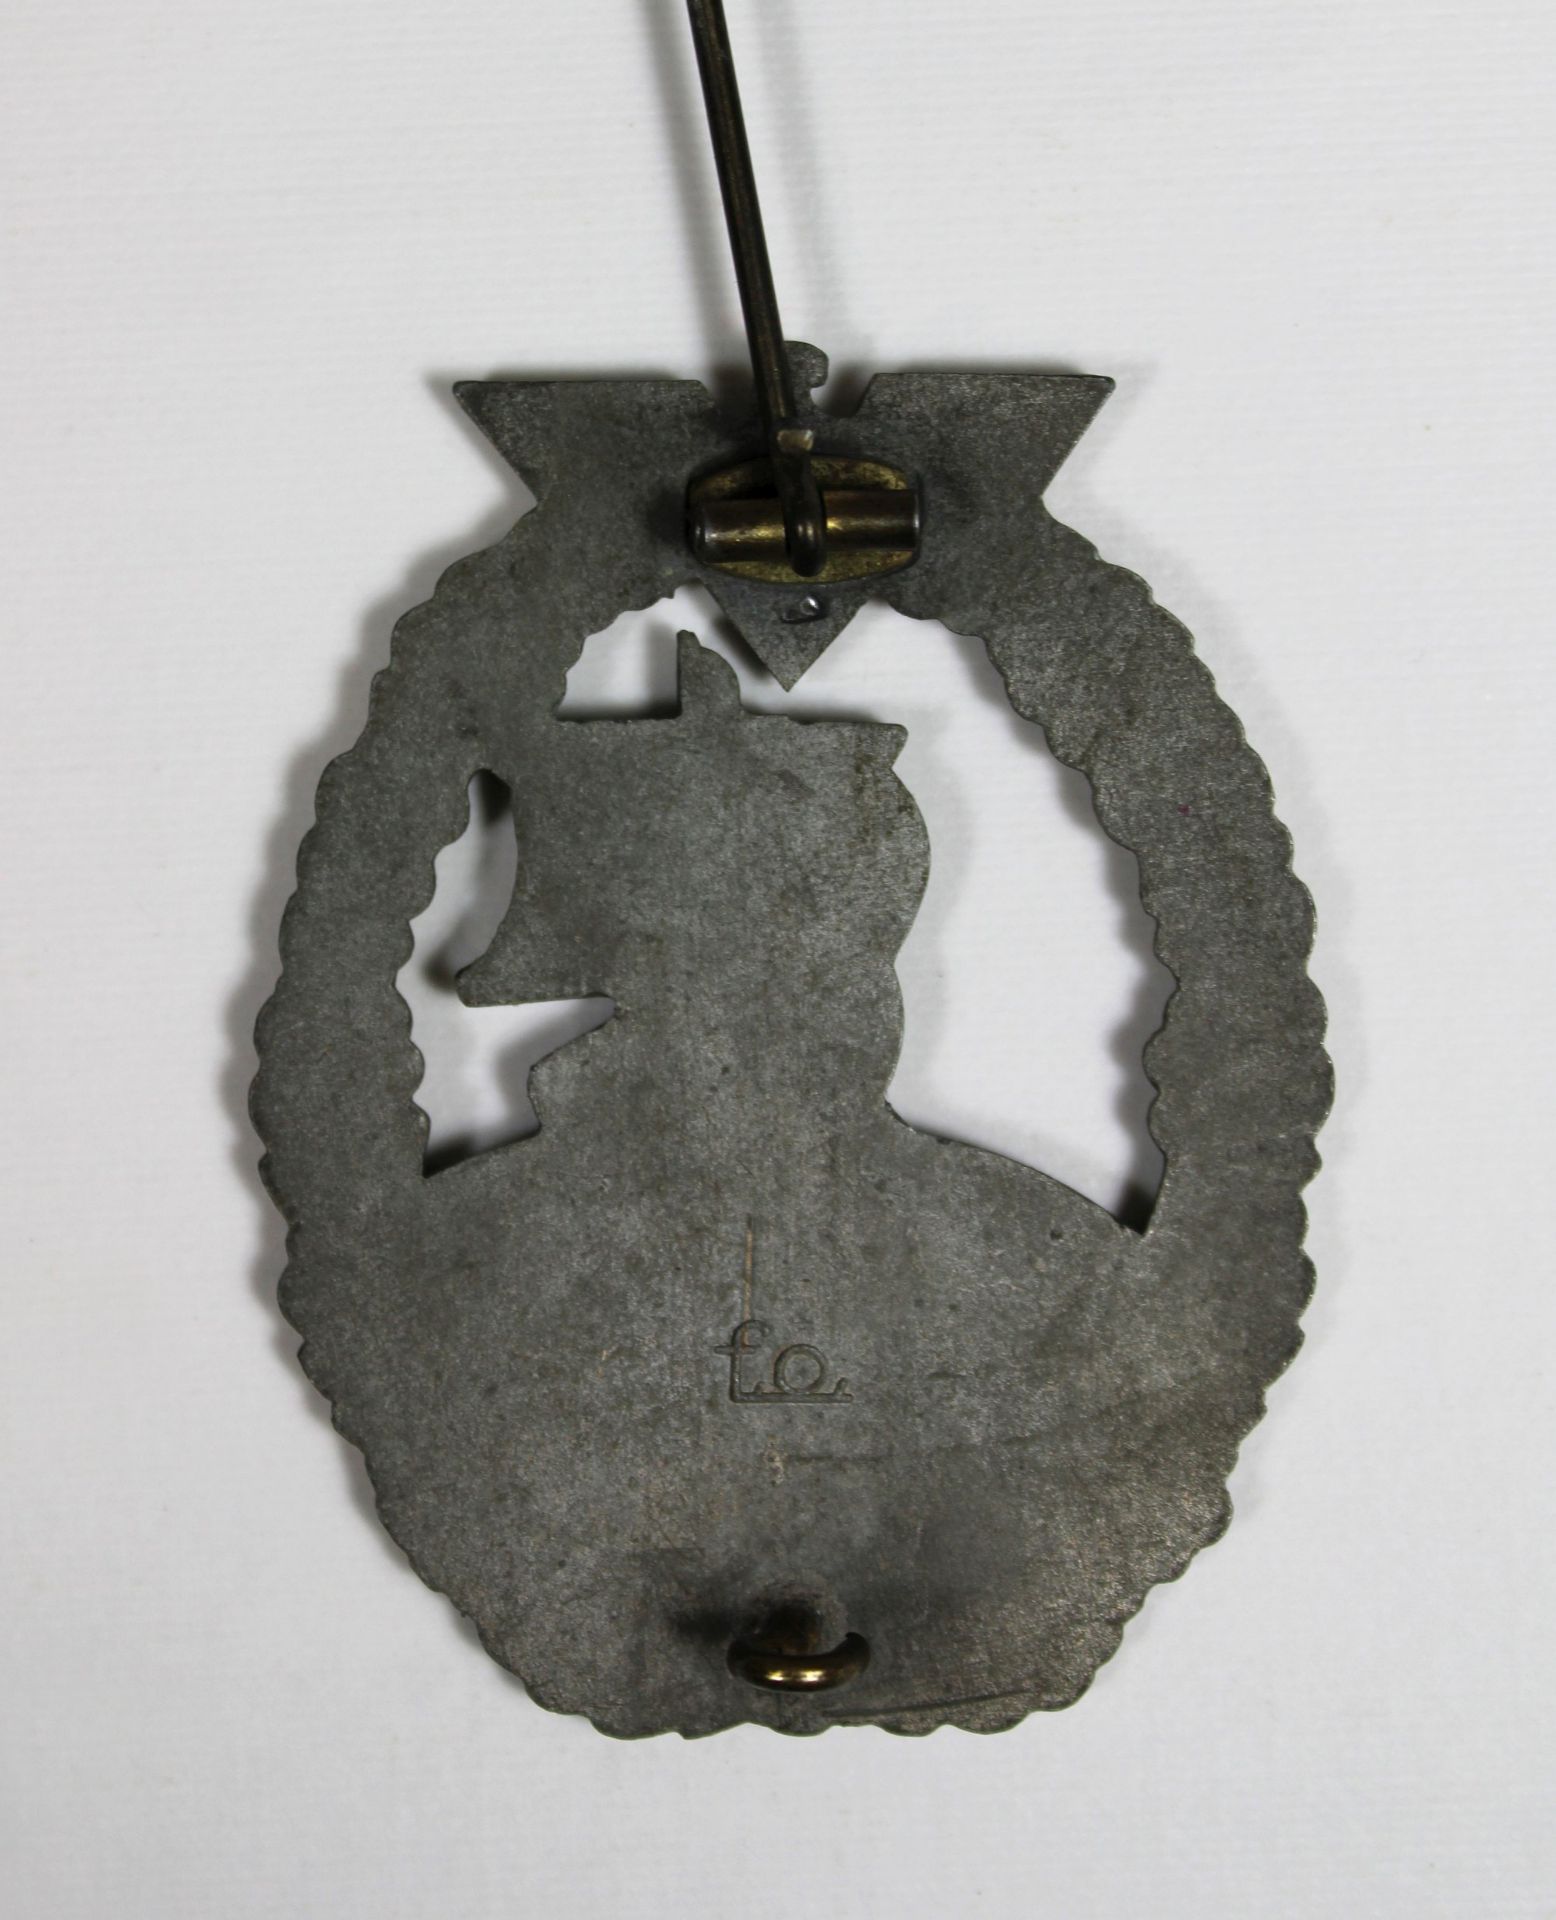 Hilfskreuzer Kriegsabzeichen der Kriegsmarine. Zink. Herstellermarke: f.o - Friedrich Orth, Wien. A - Bild 2 aus 2